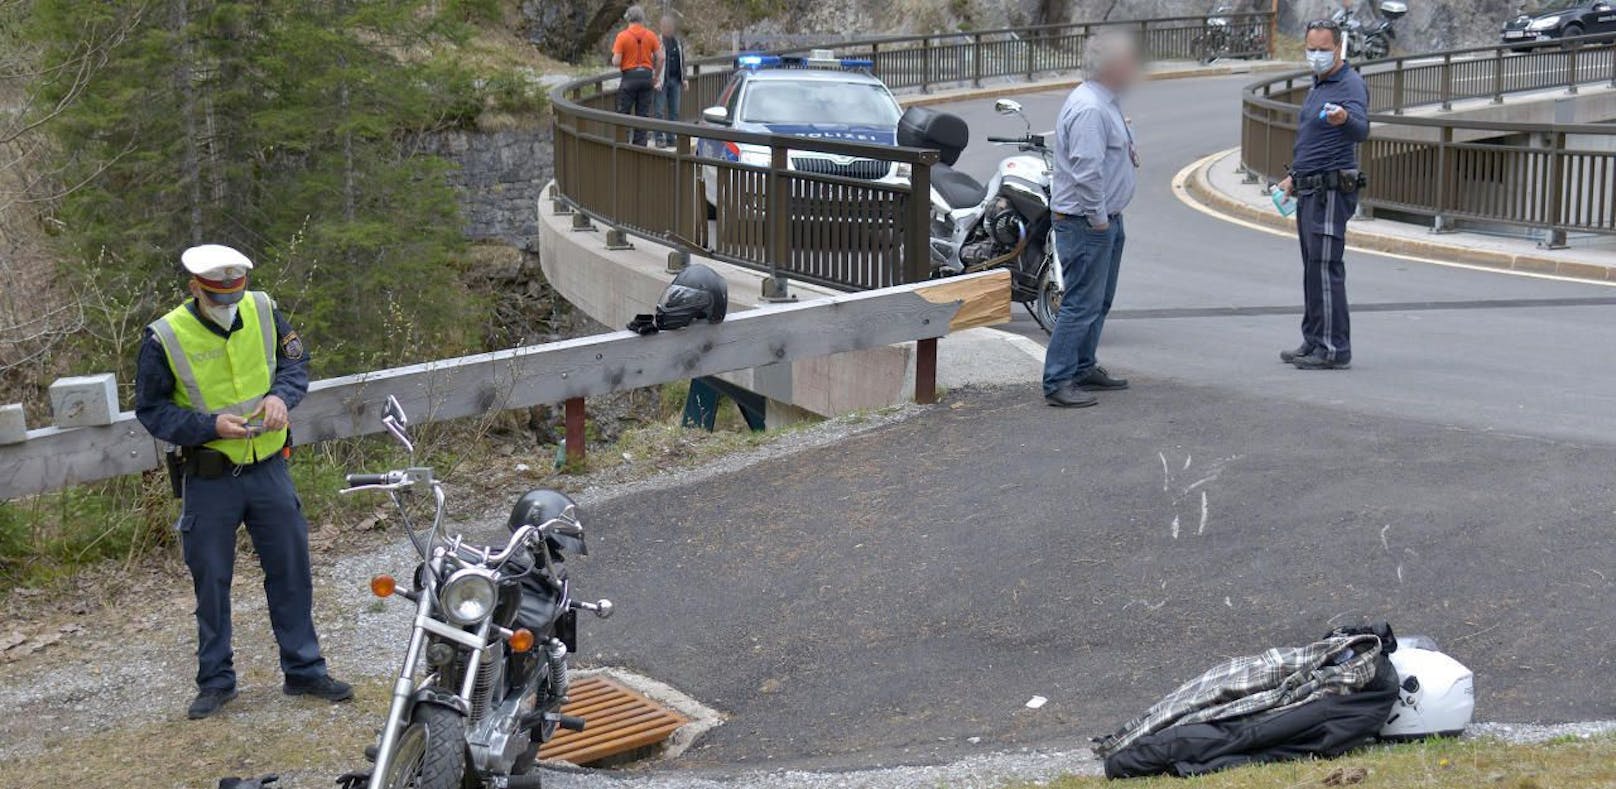 Bikerin bei Crash gegen Brücke schwer verletzt